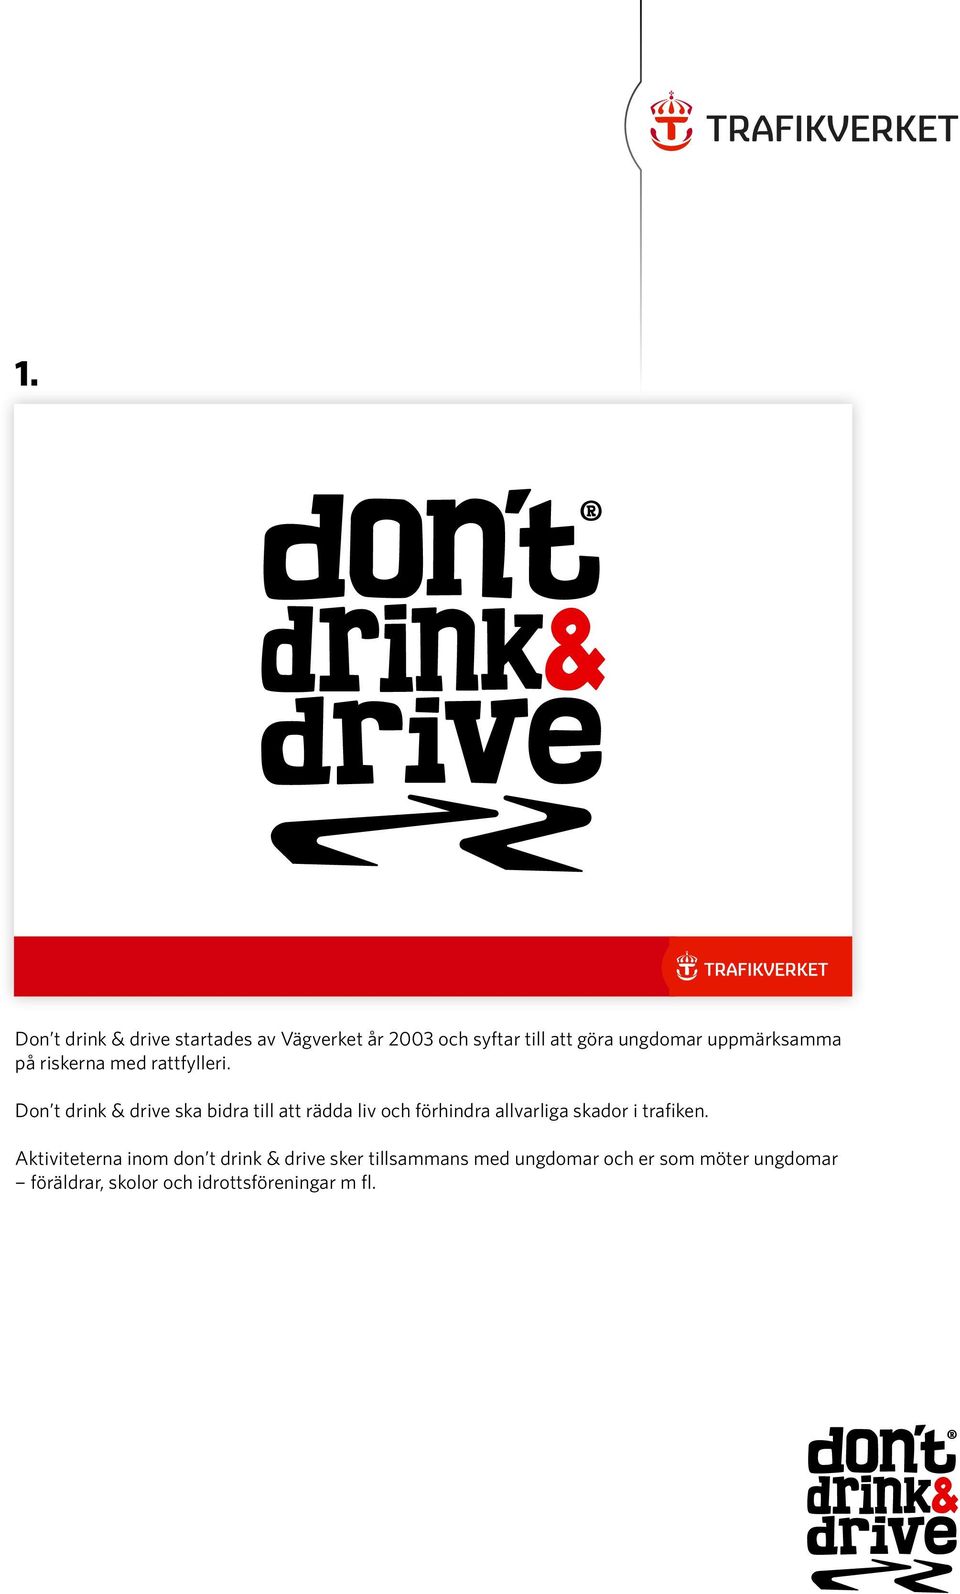 Don t drink & drive ska bidra till att rädda liv och förhindra allvarliga skador i